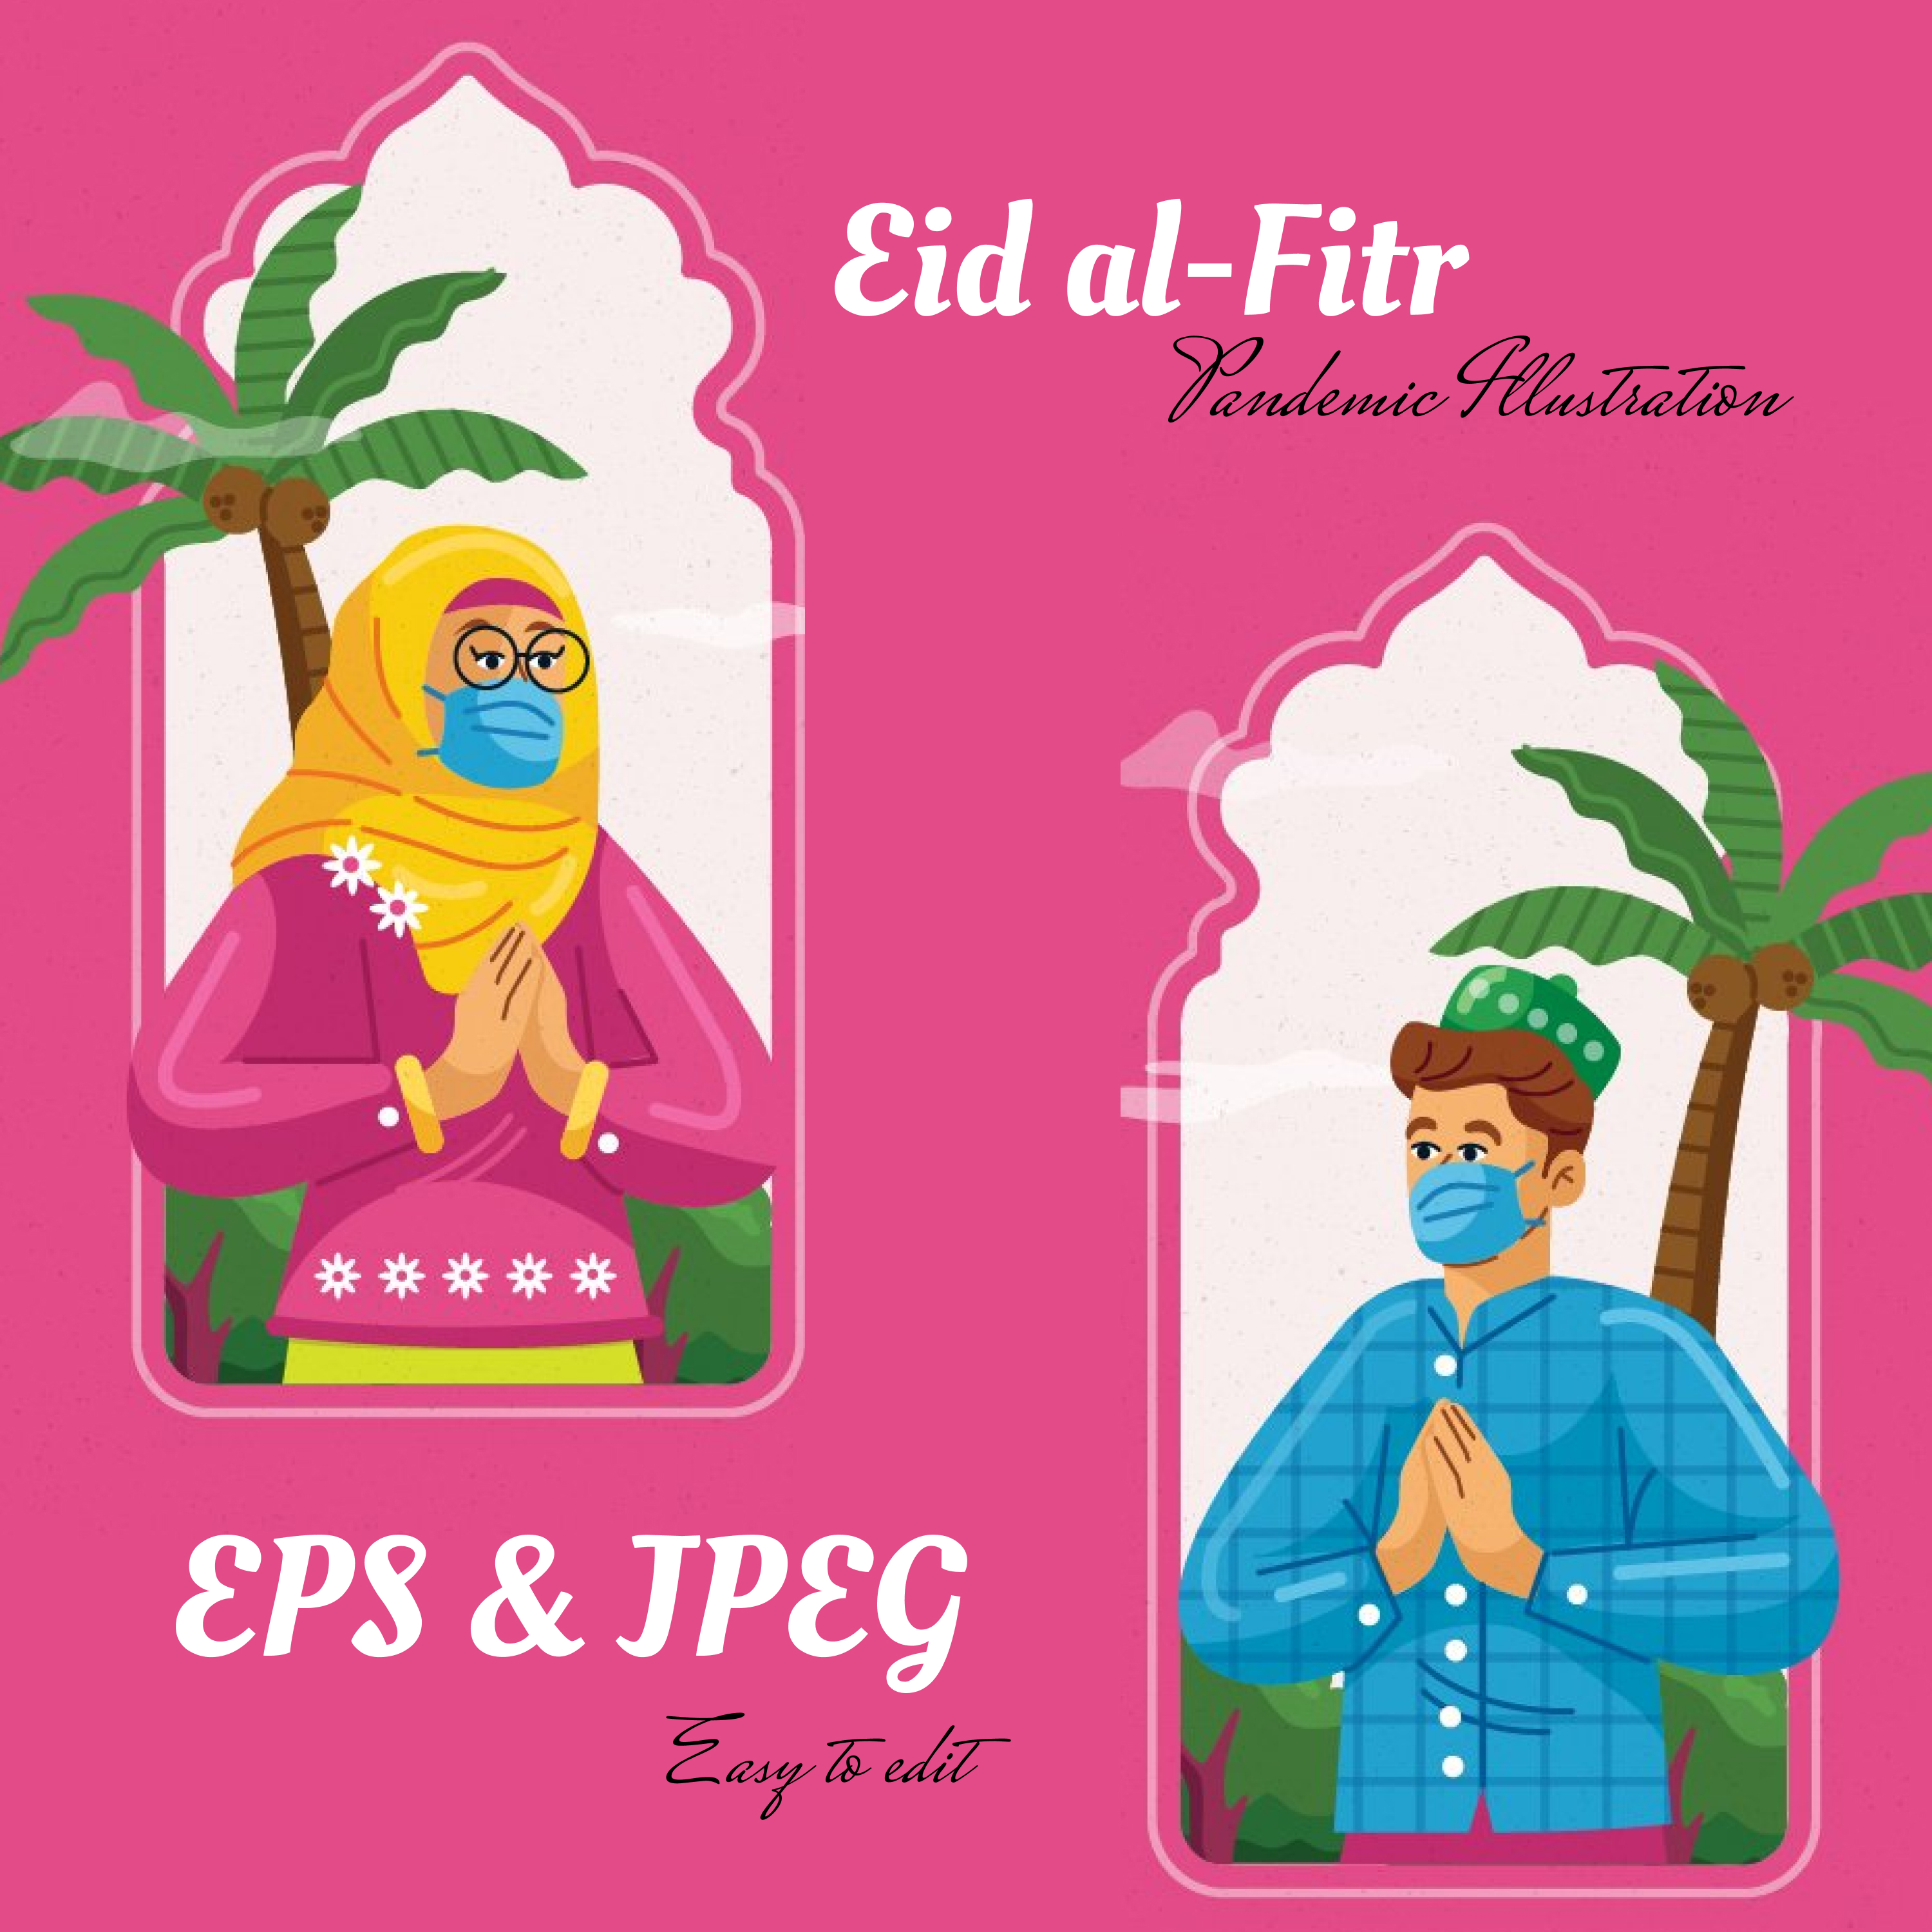 Prints of eid al fitr pandemic illustration.